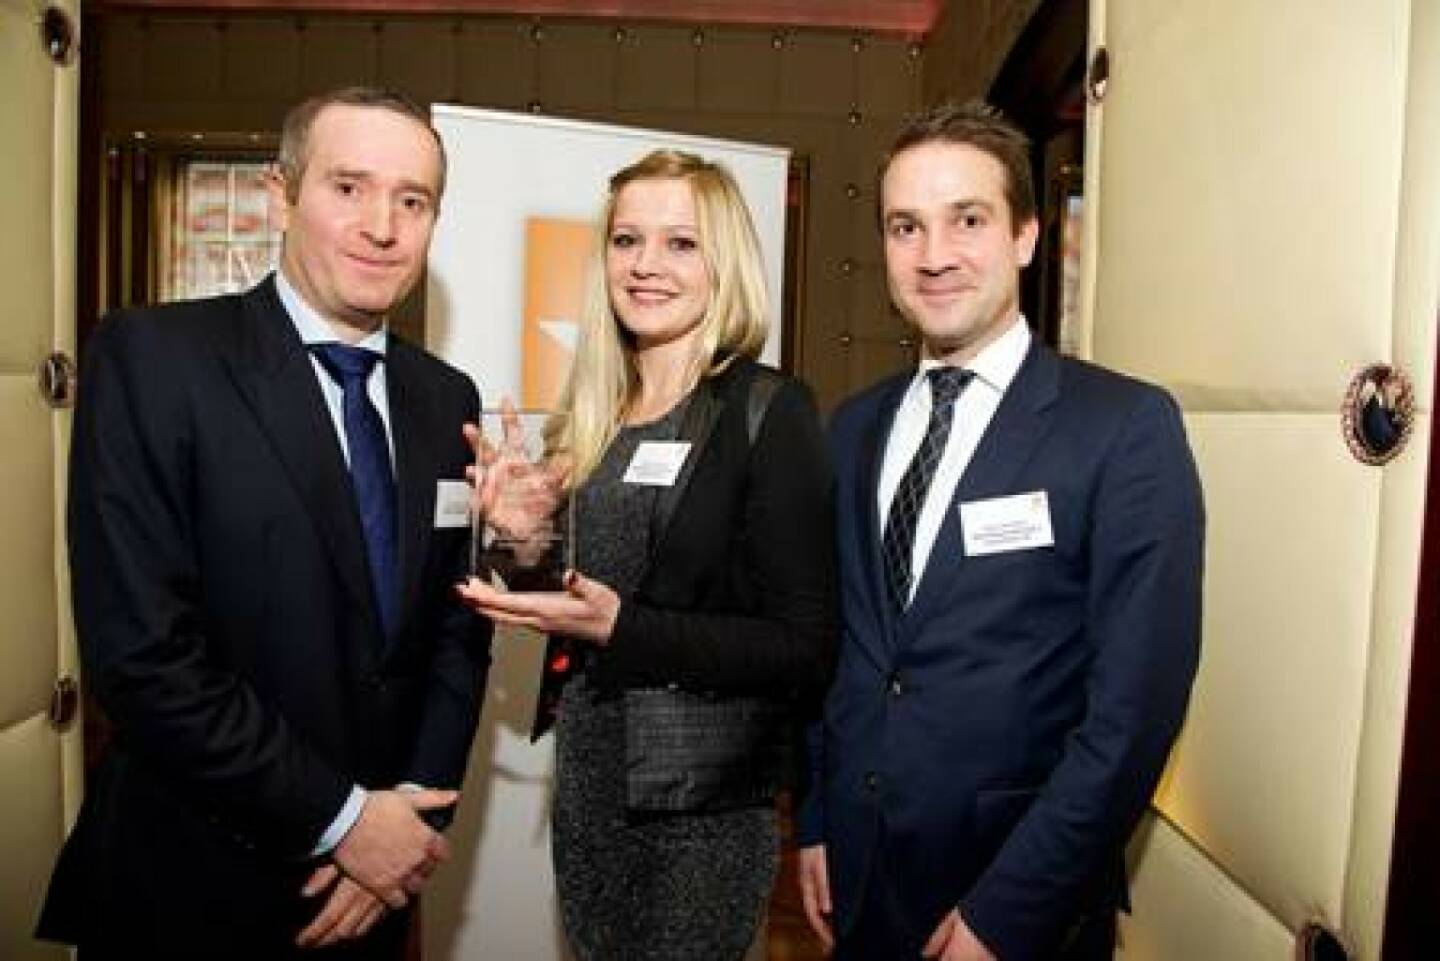 James Williams (Hedgeweek), Miranda Ademaj (Skënderbeg), Bruno Schneller (Skënderbeg): Skënderbeg wird von Hedgeweek für den Best Specialist Fund of Hedge Funds ausgezeichnet